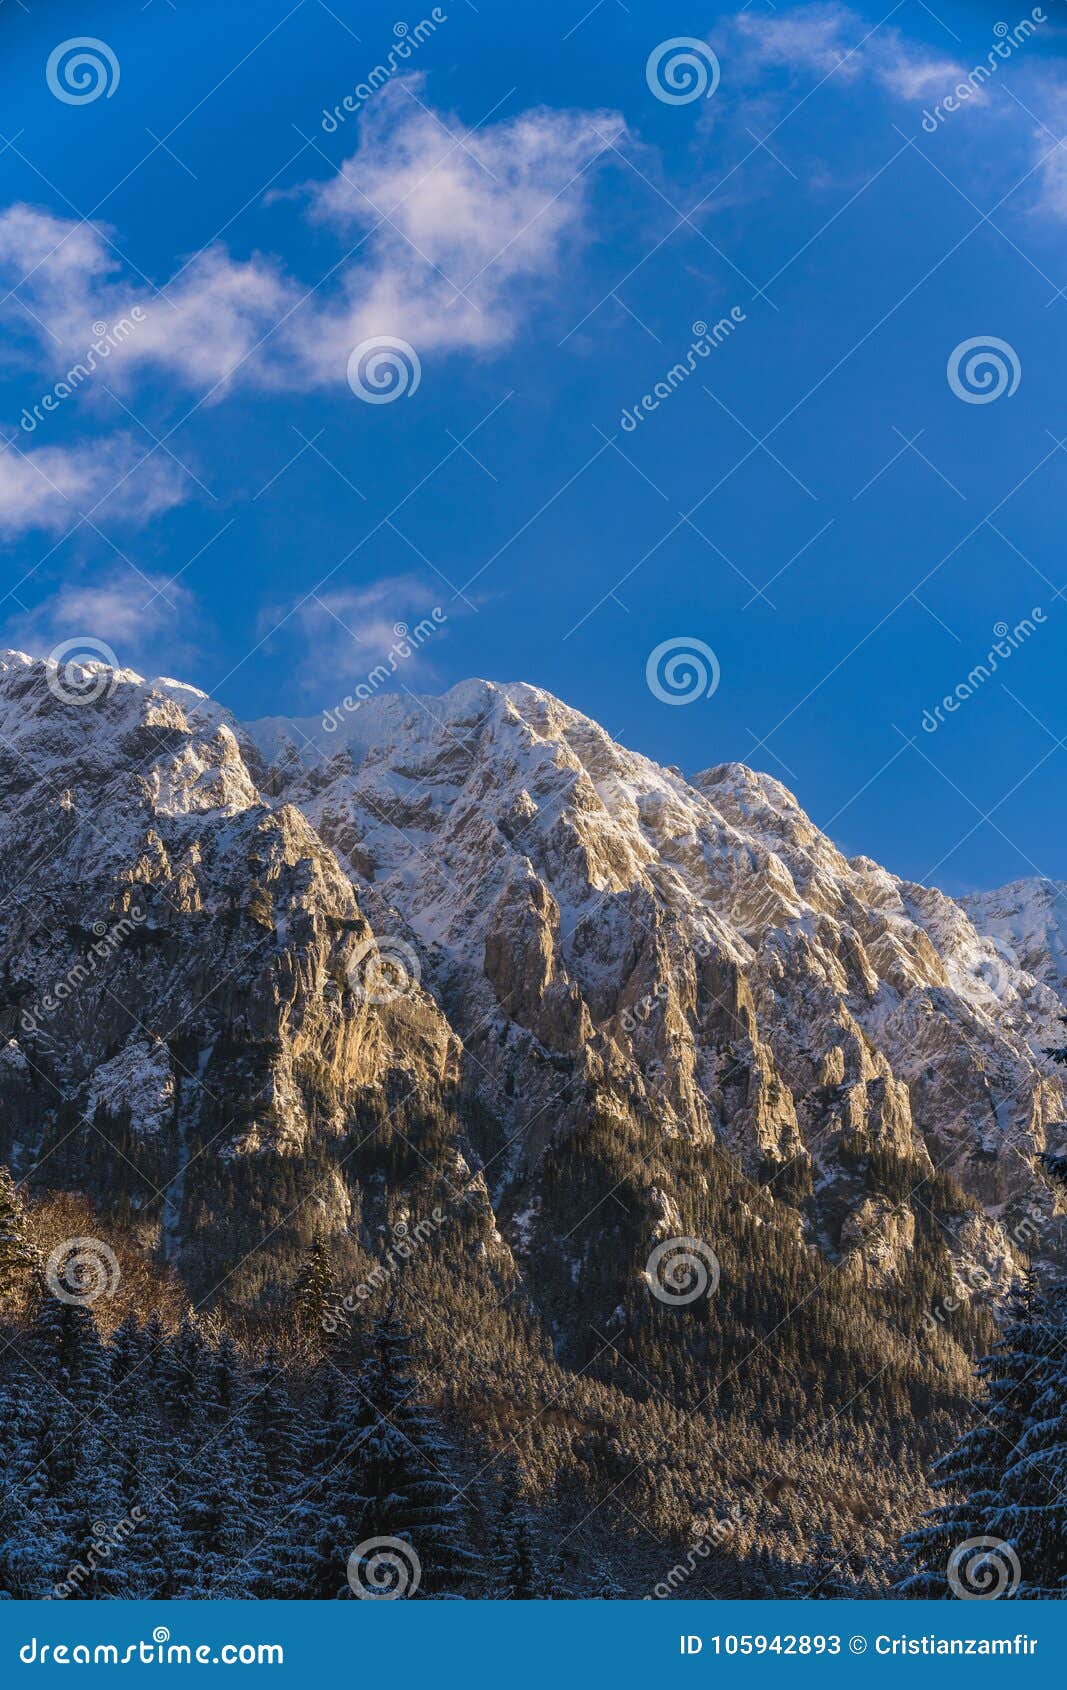 winter landscape with carpati piatra craiului mountain